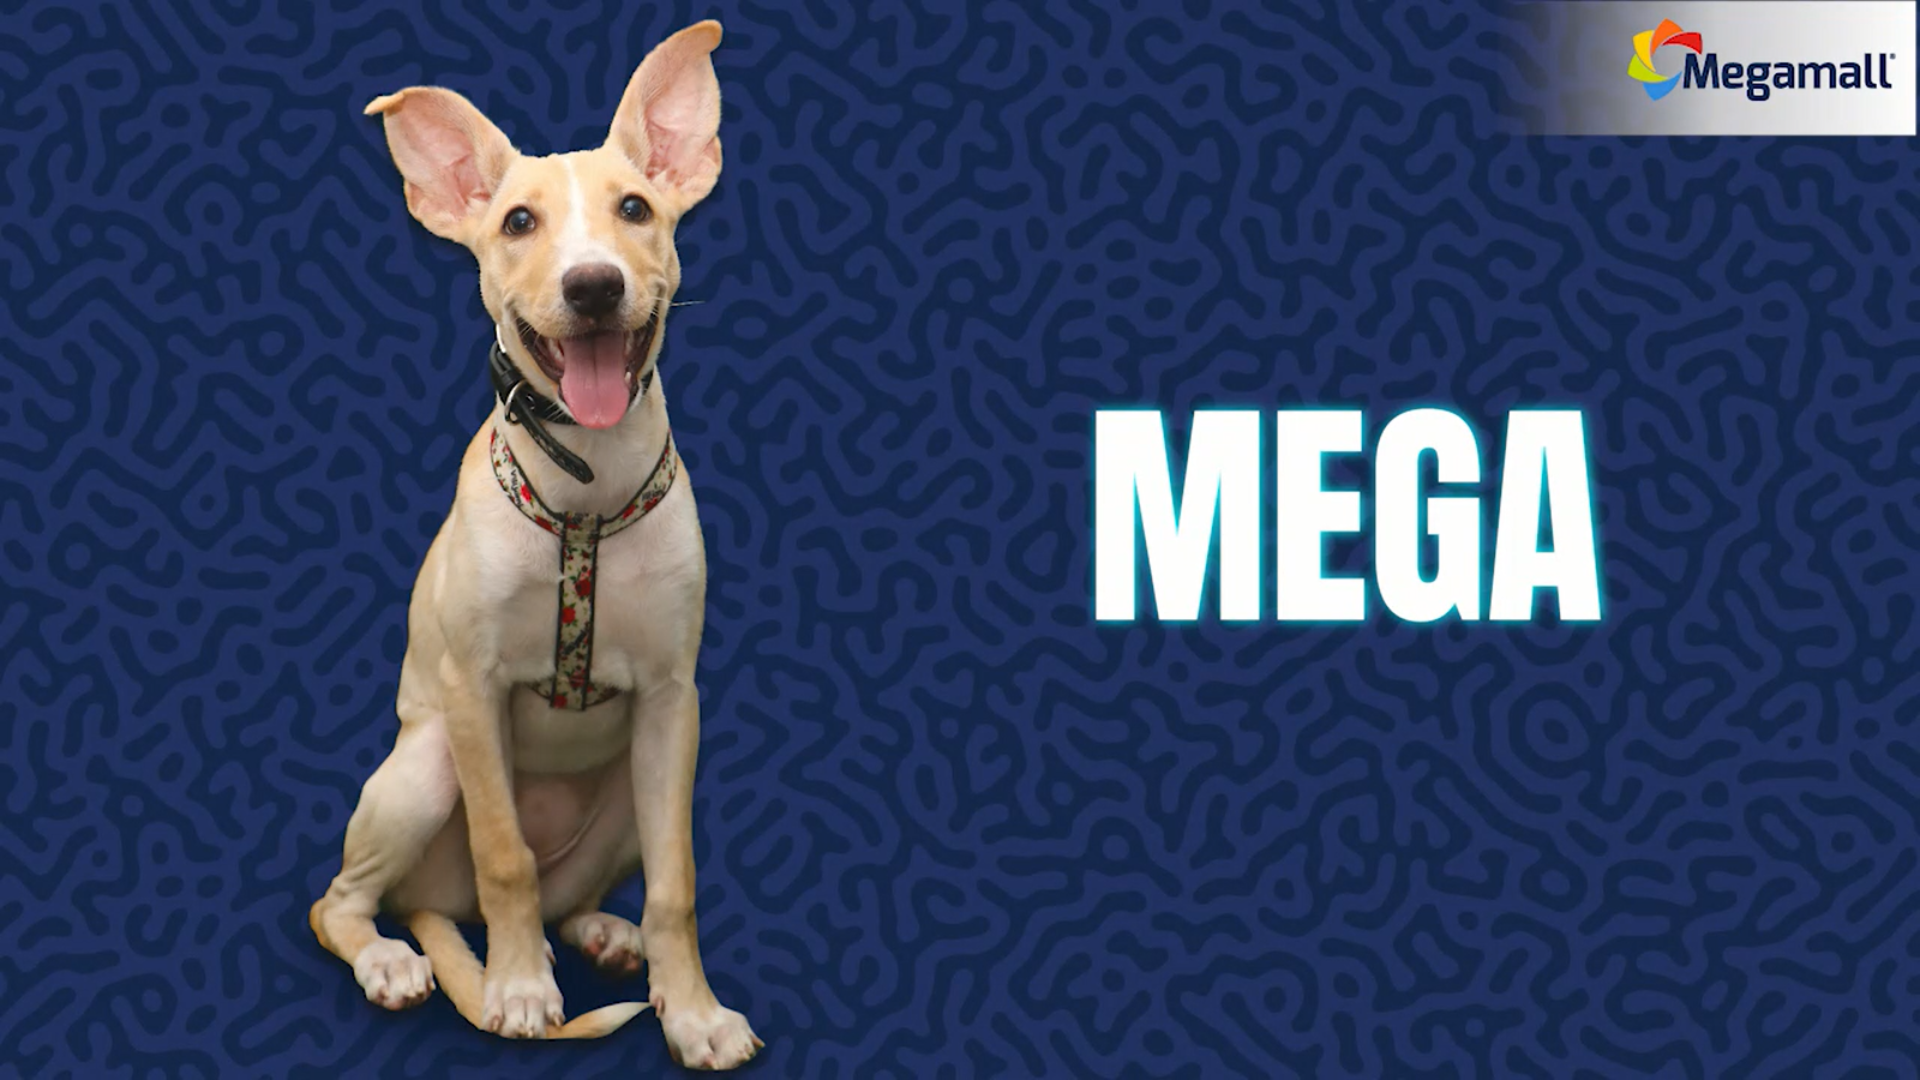 Conoce a MEGA - La Mascota Oficial de Megamall